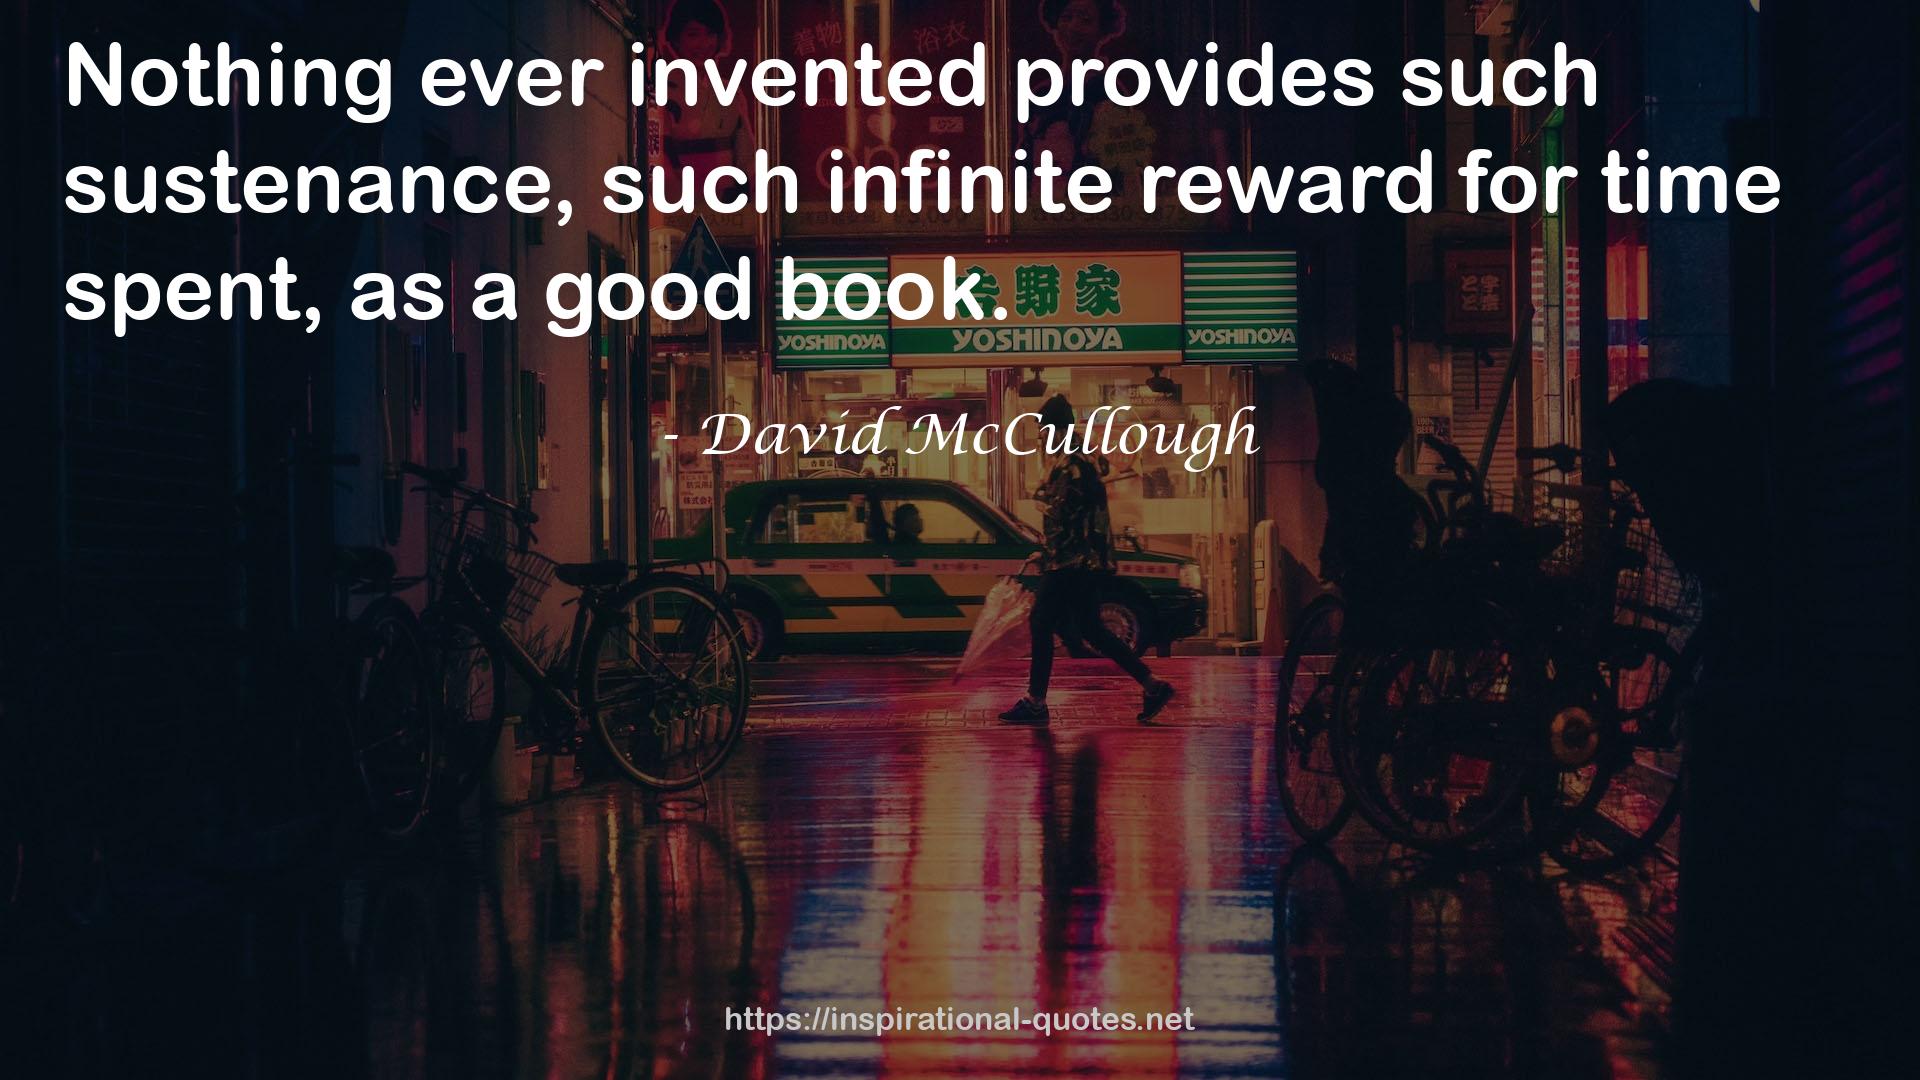 such infinite reward  QUOTES